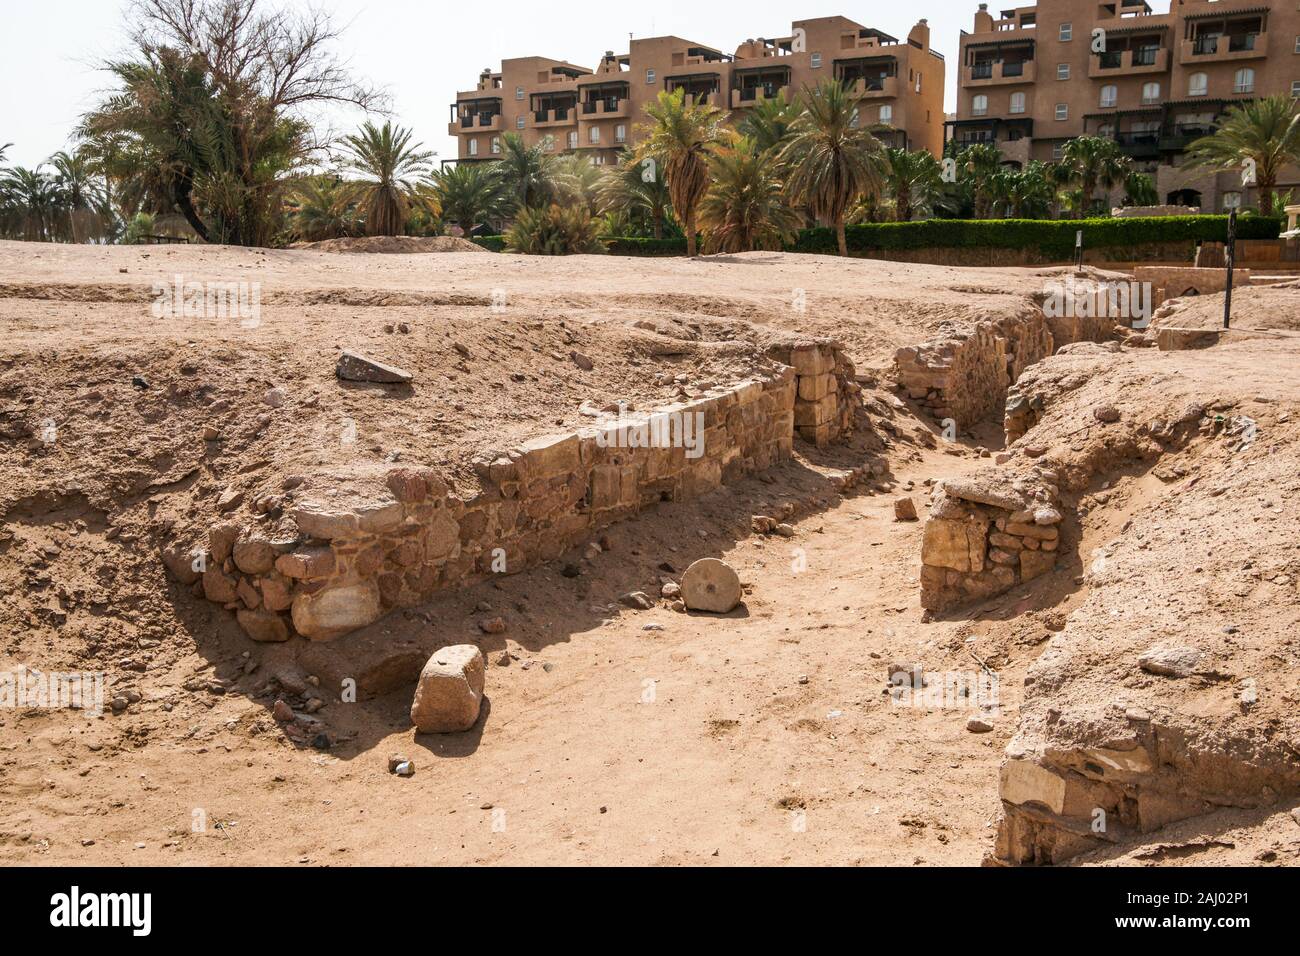 Ayla (Ciudad Islámica del), sitio arqueológico, centro de la ciudad de Aqaba, ciudad de Aqaba, Jordania, Oriente Medio. Foto de stock